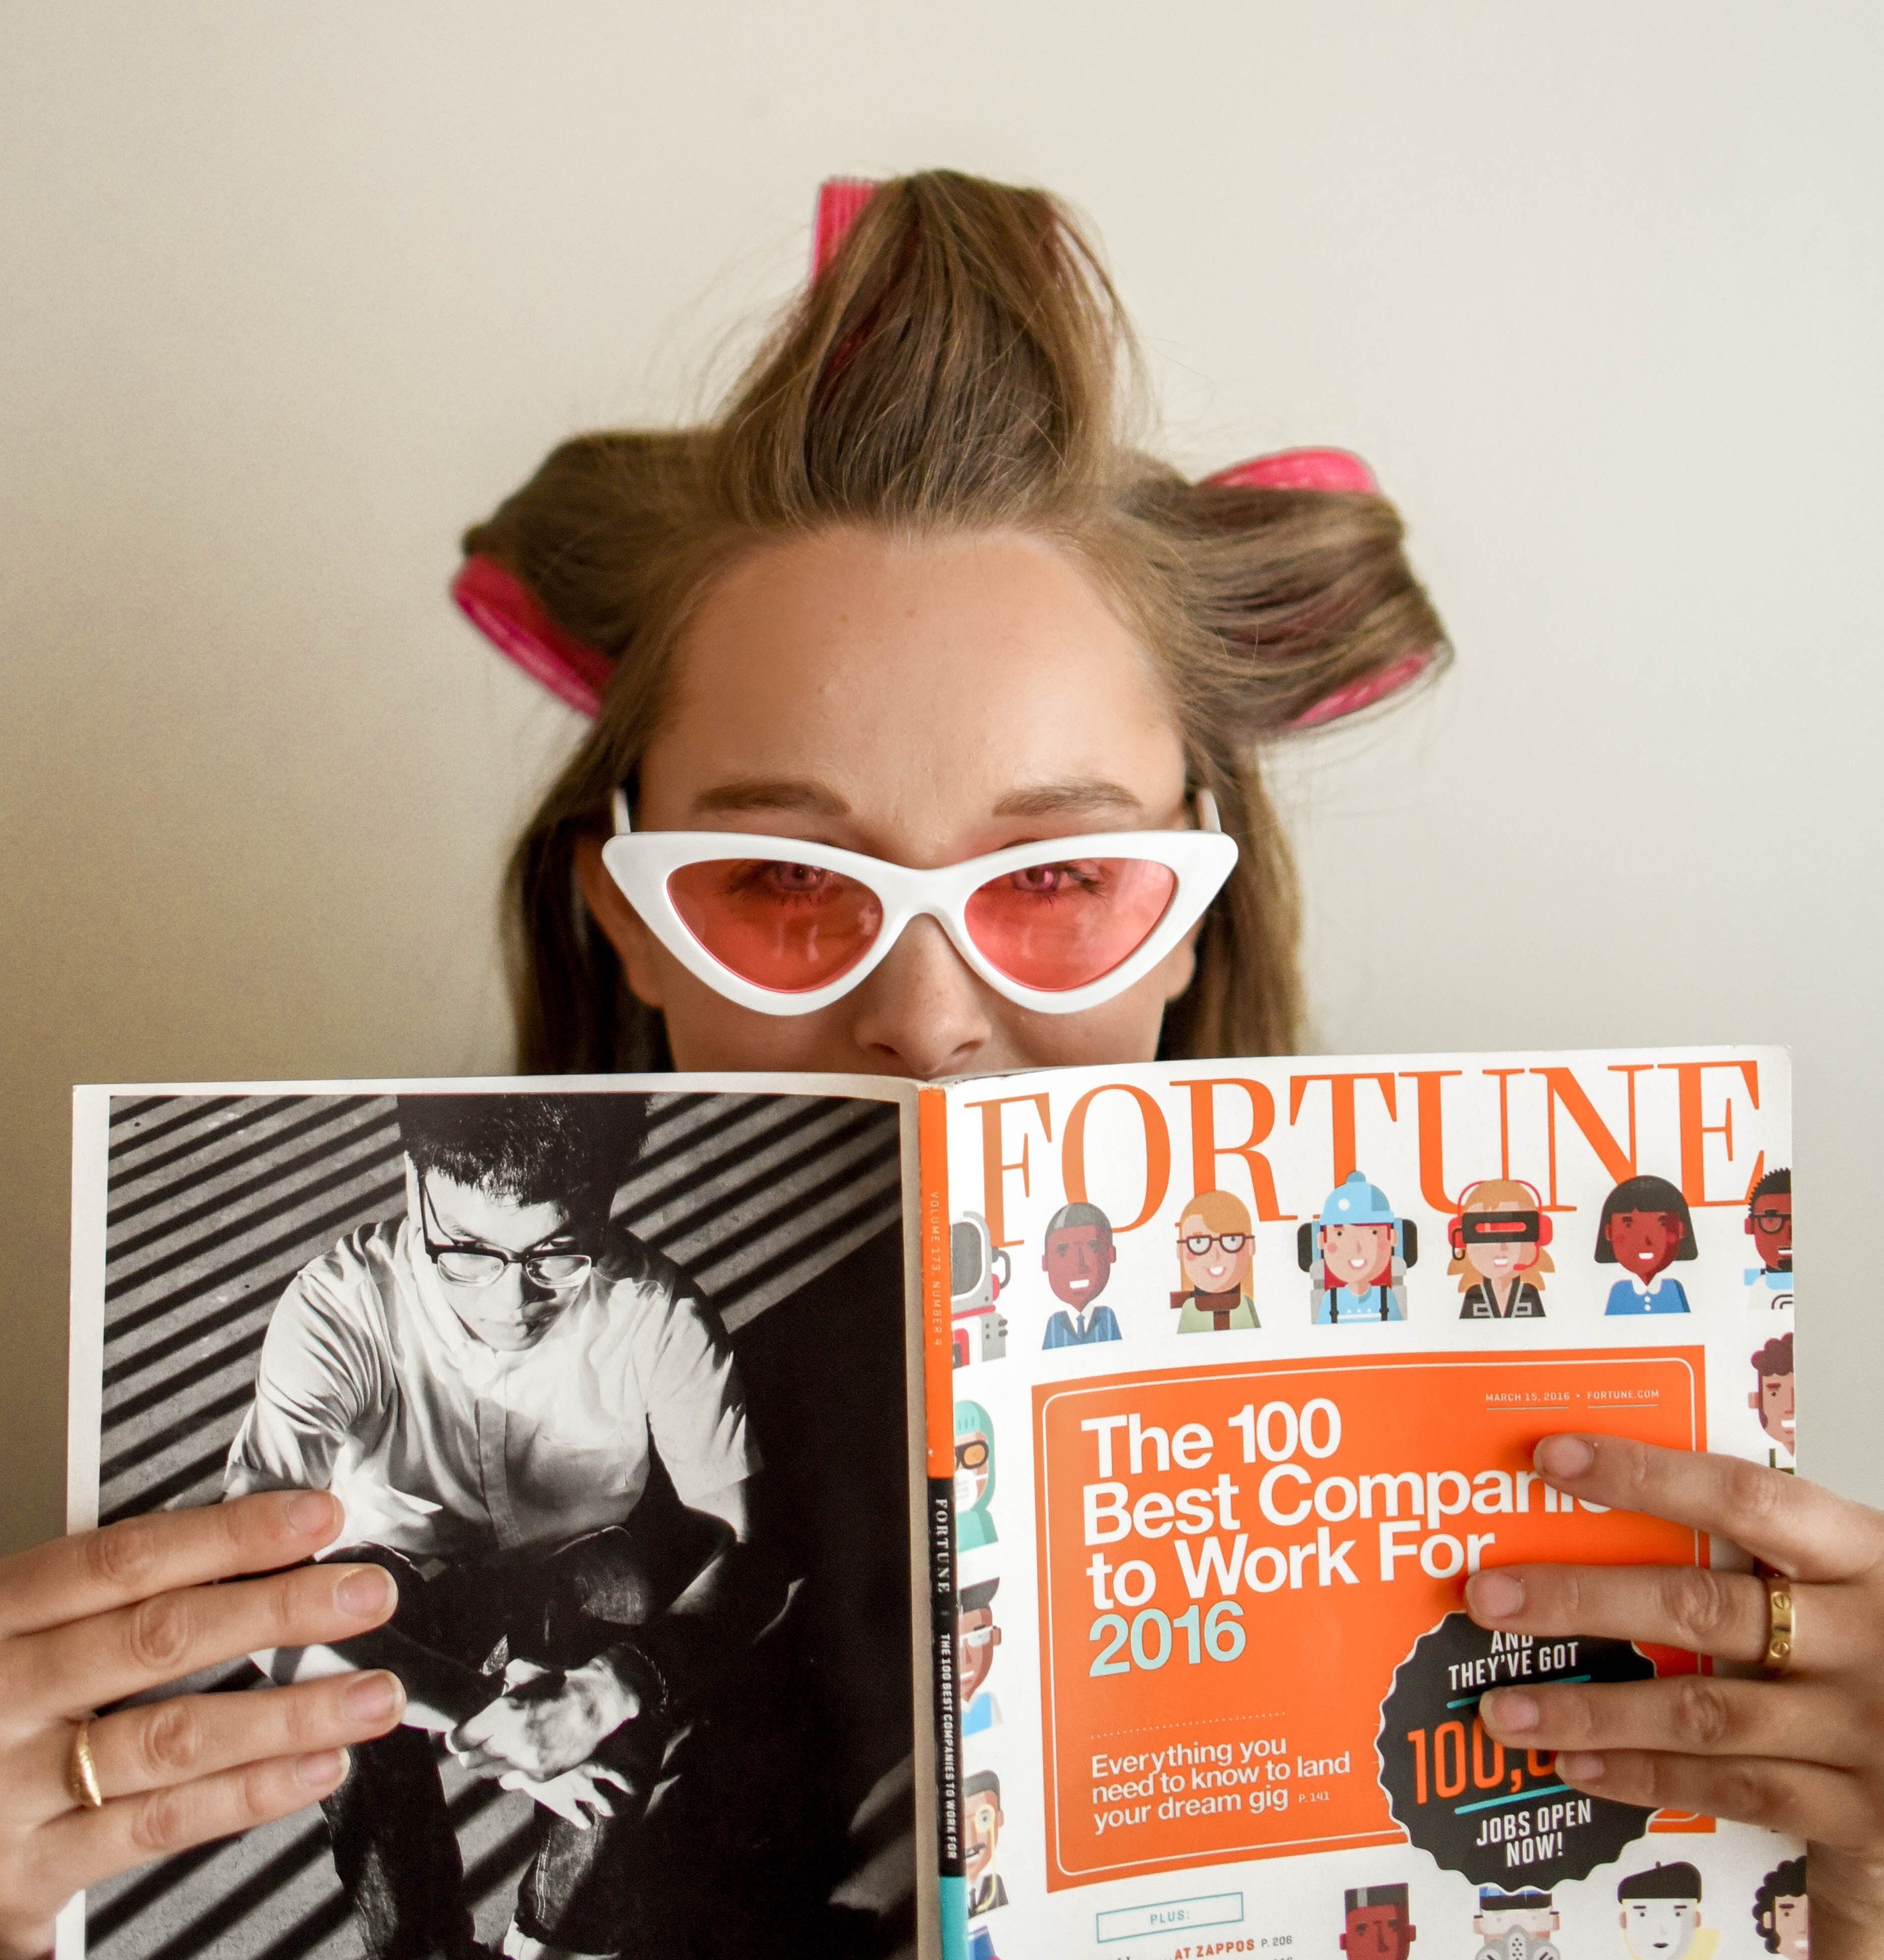 Mulher no salão de cabeleireiro segurando uma revista